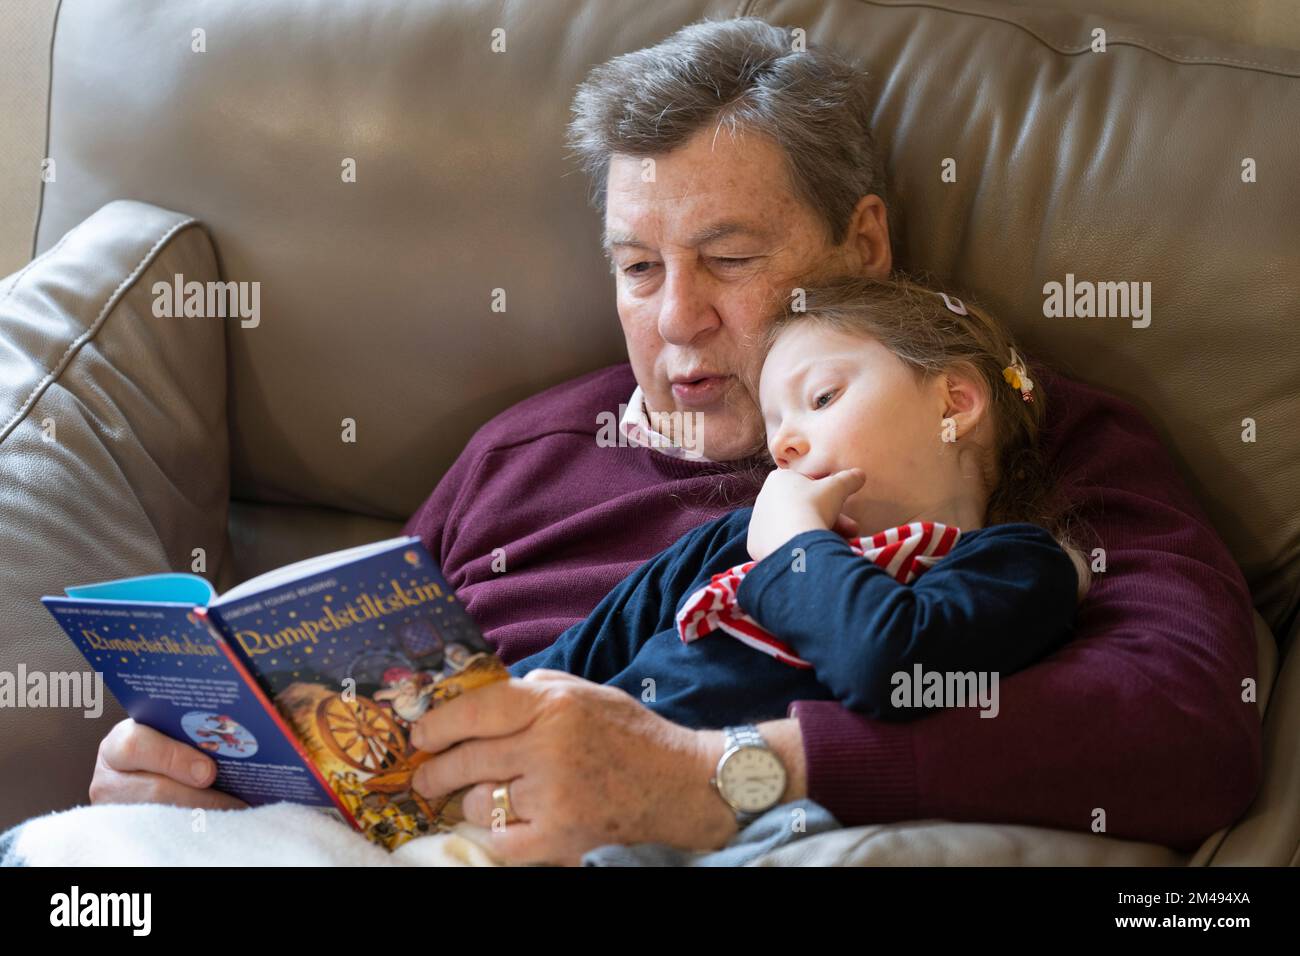 Ein Großvater, der seiner vierjährigen Enkelin, die aufmerksam zuhört, das klassische deutsche Märchenbuch der Kinder Rumpelstilzchen vorliest. UK Stockfoto